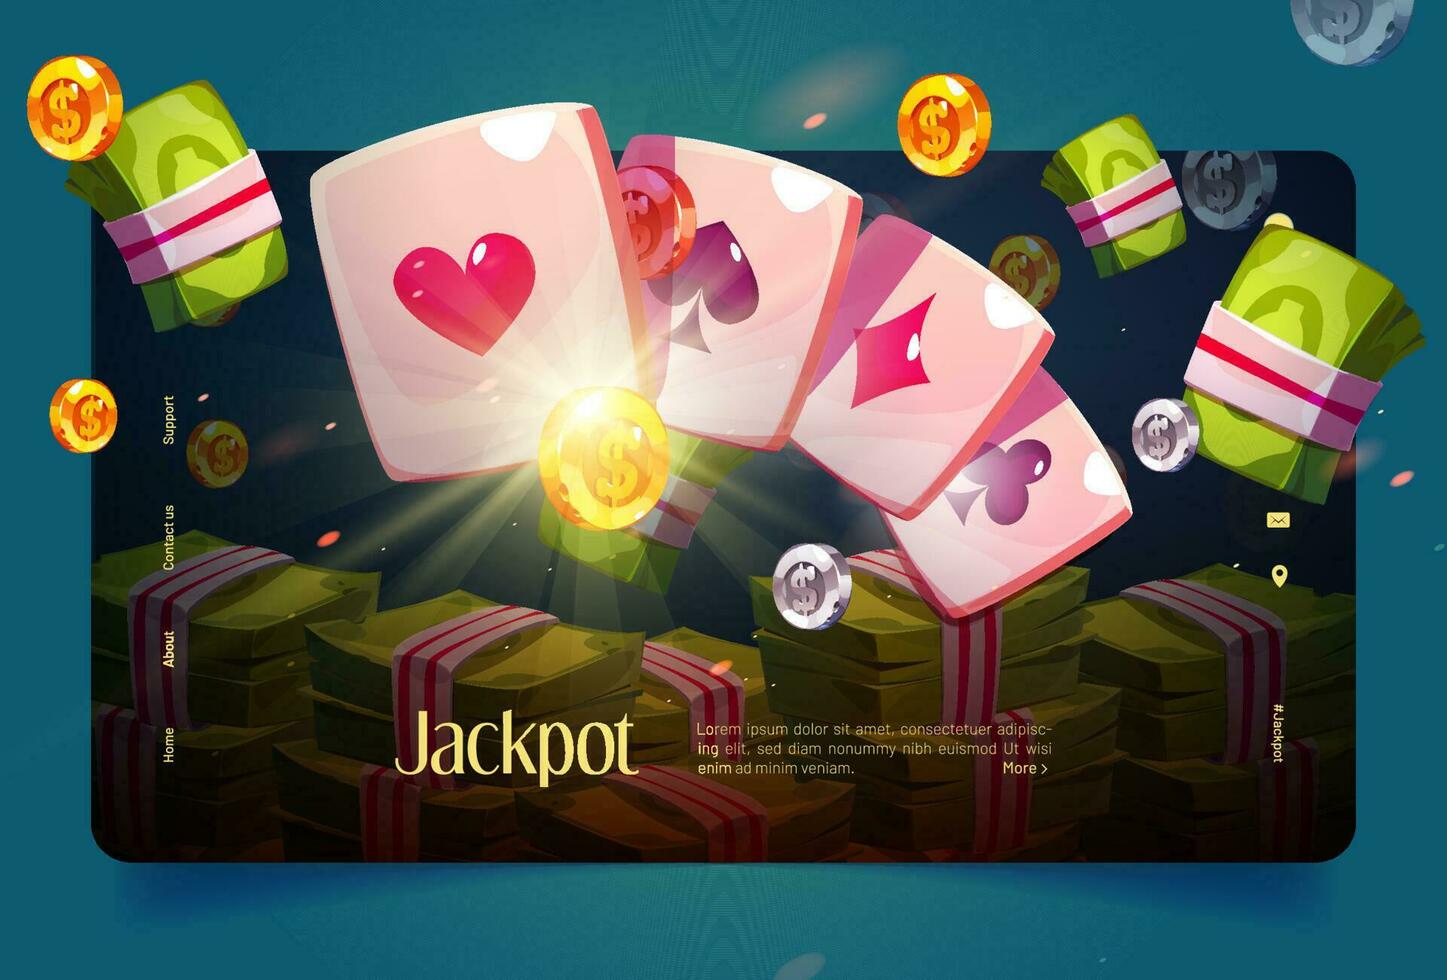 kasino baner med poker kort och pengar vektor